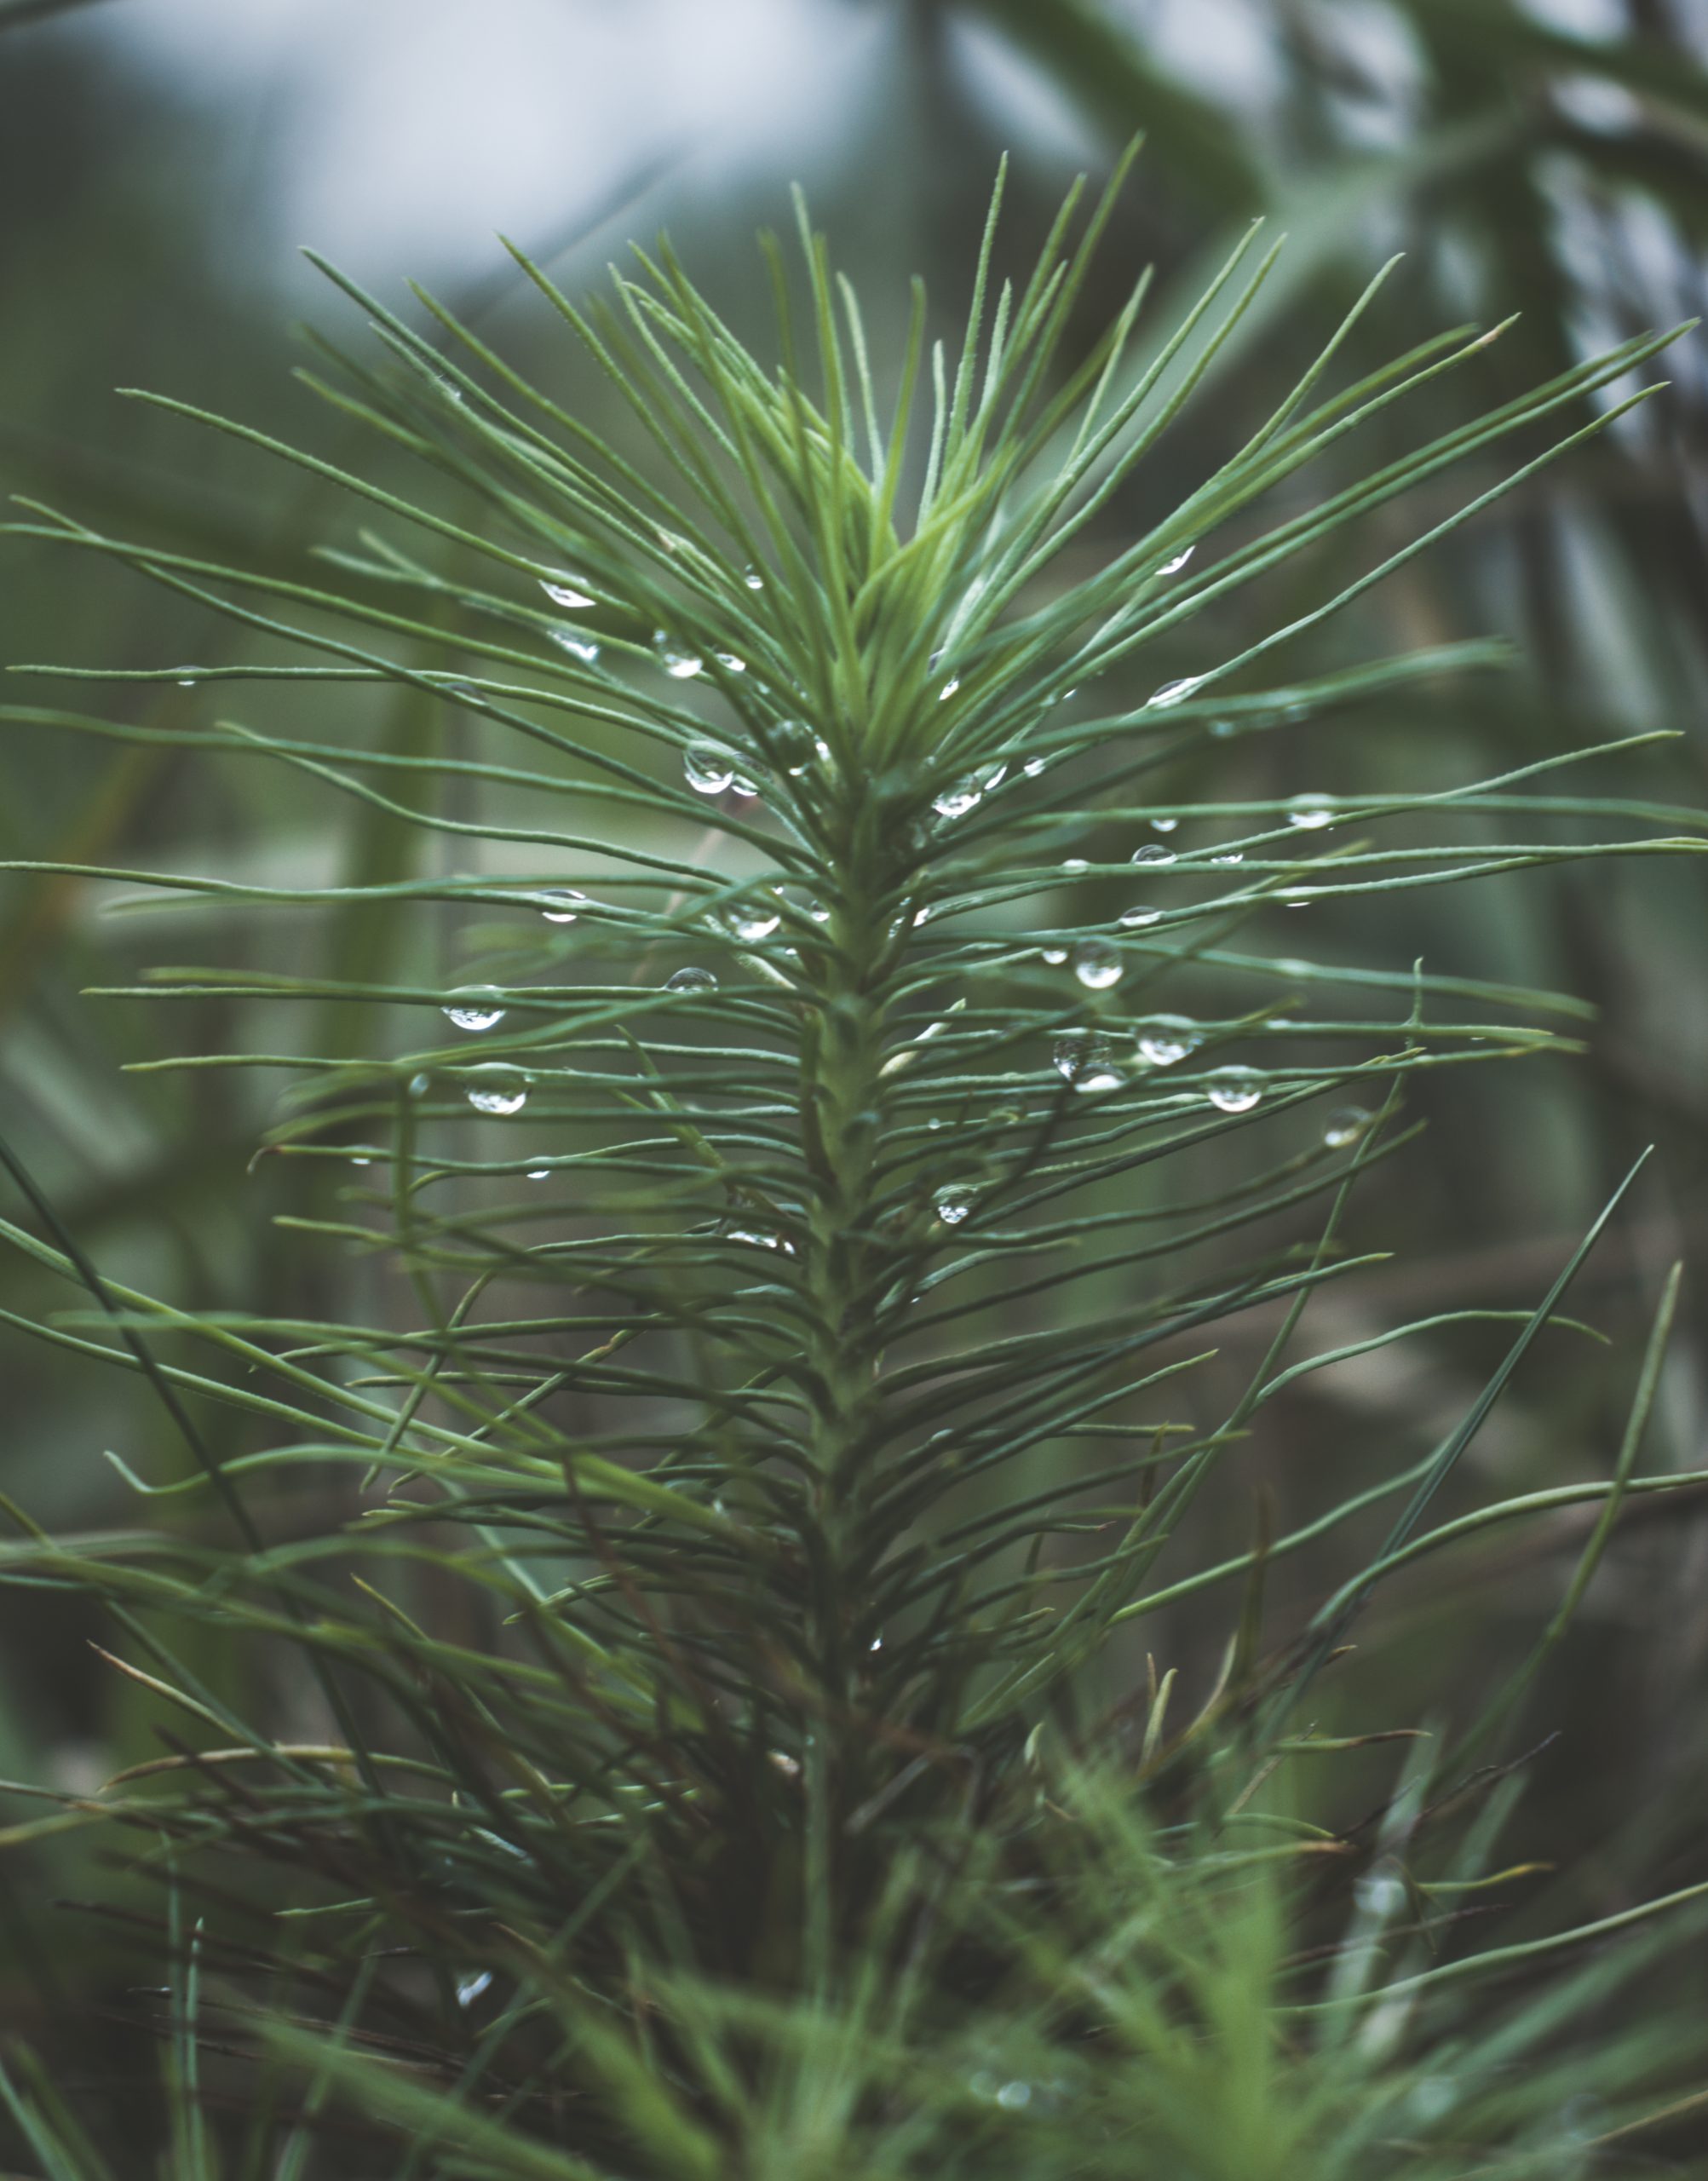 A little pine plant